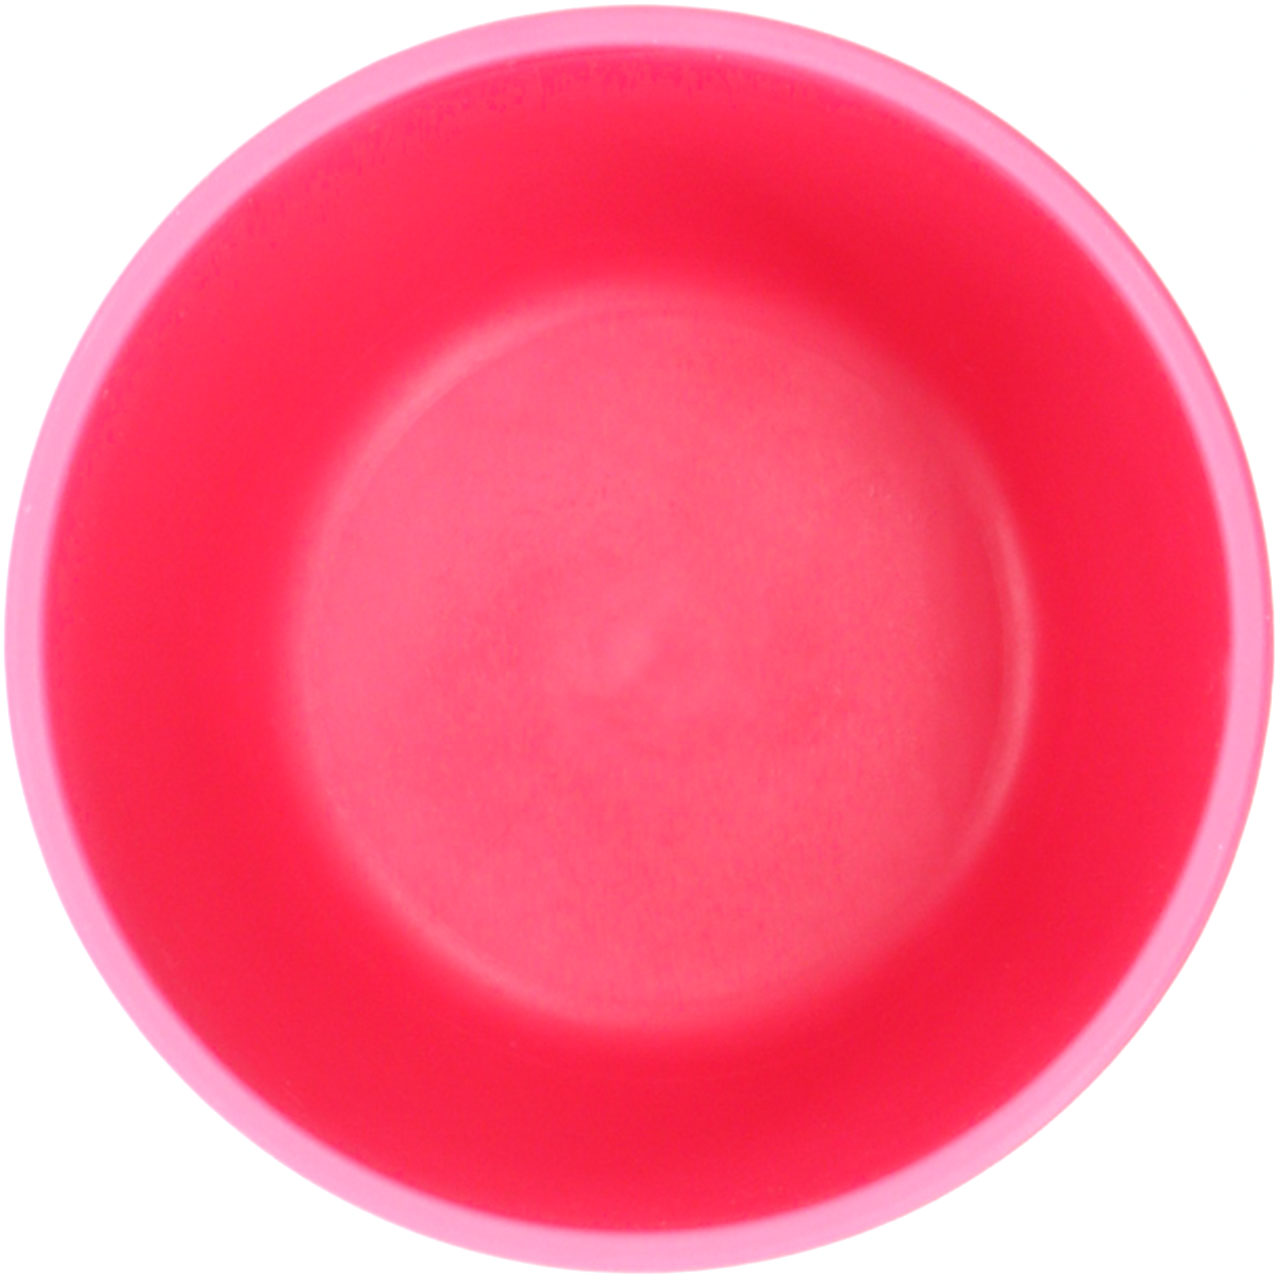 Becher pink 200 ml – bruchsicher & frei von Weichmachern